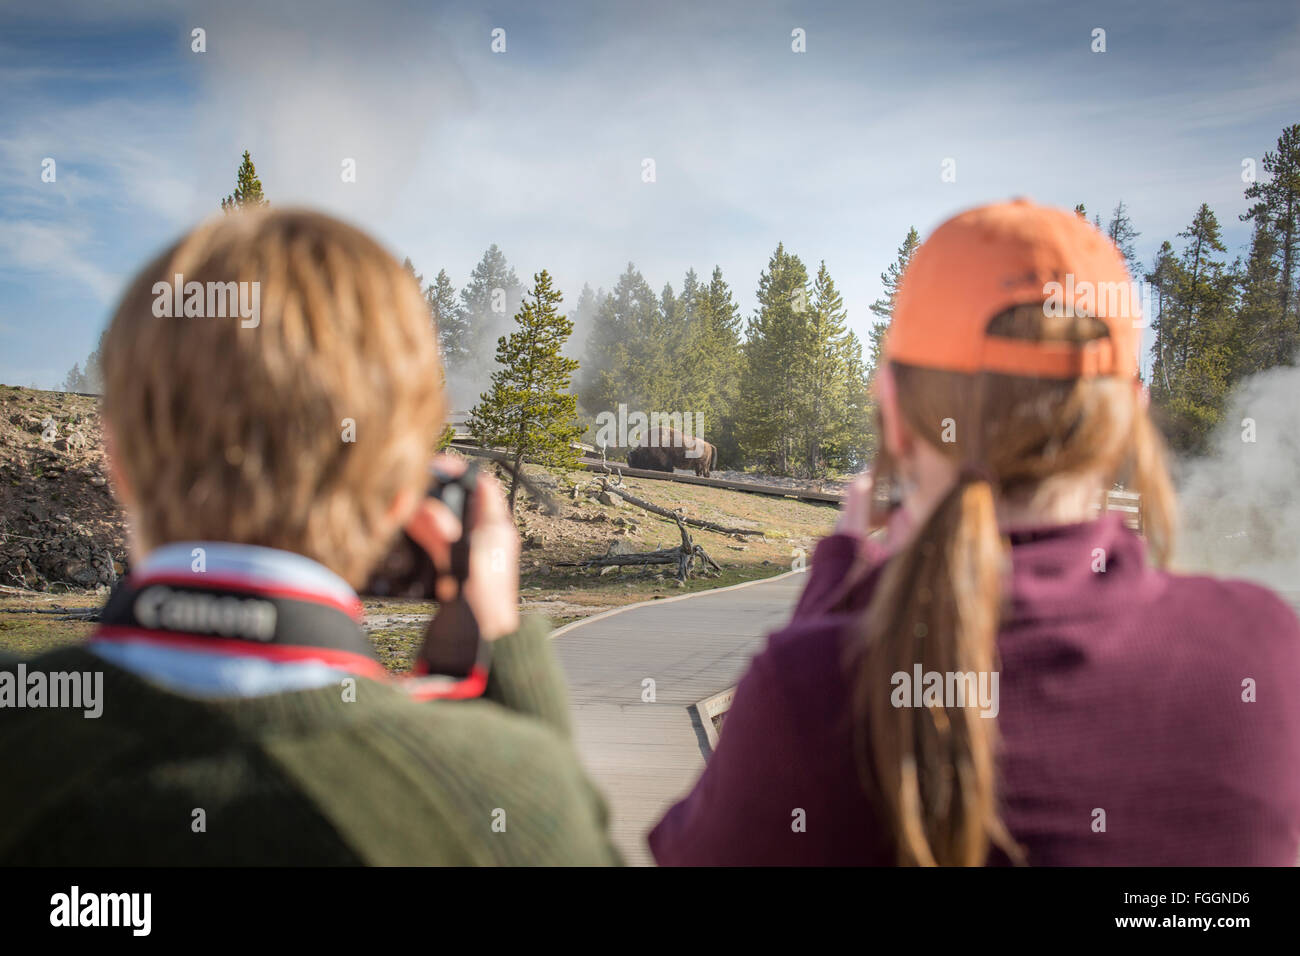 Deux femmes prendre des photos d'un bison errant dans un champ de geysers. Banque D'Images